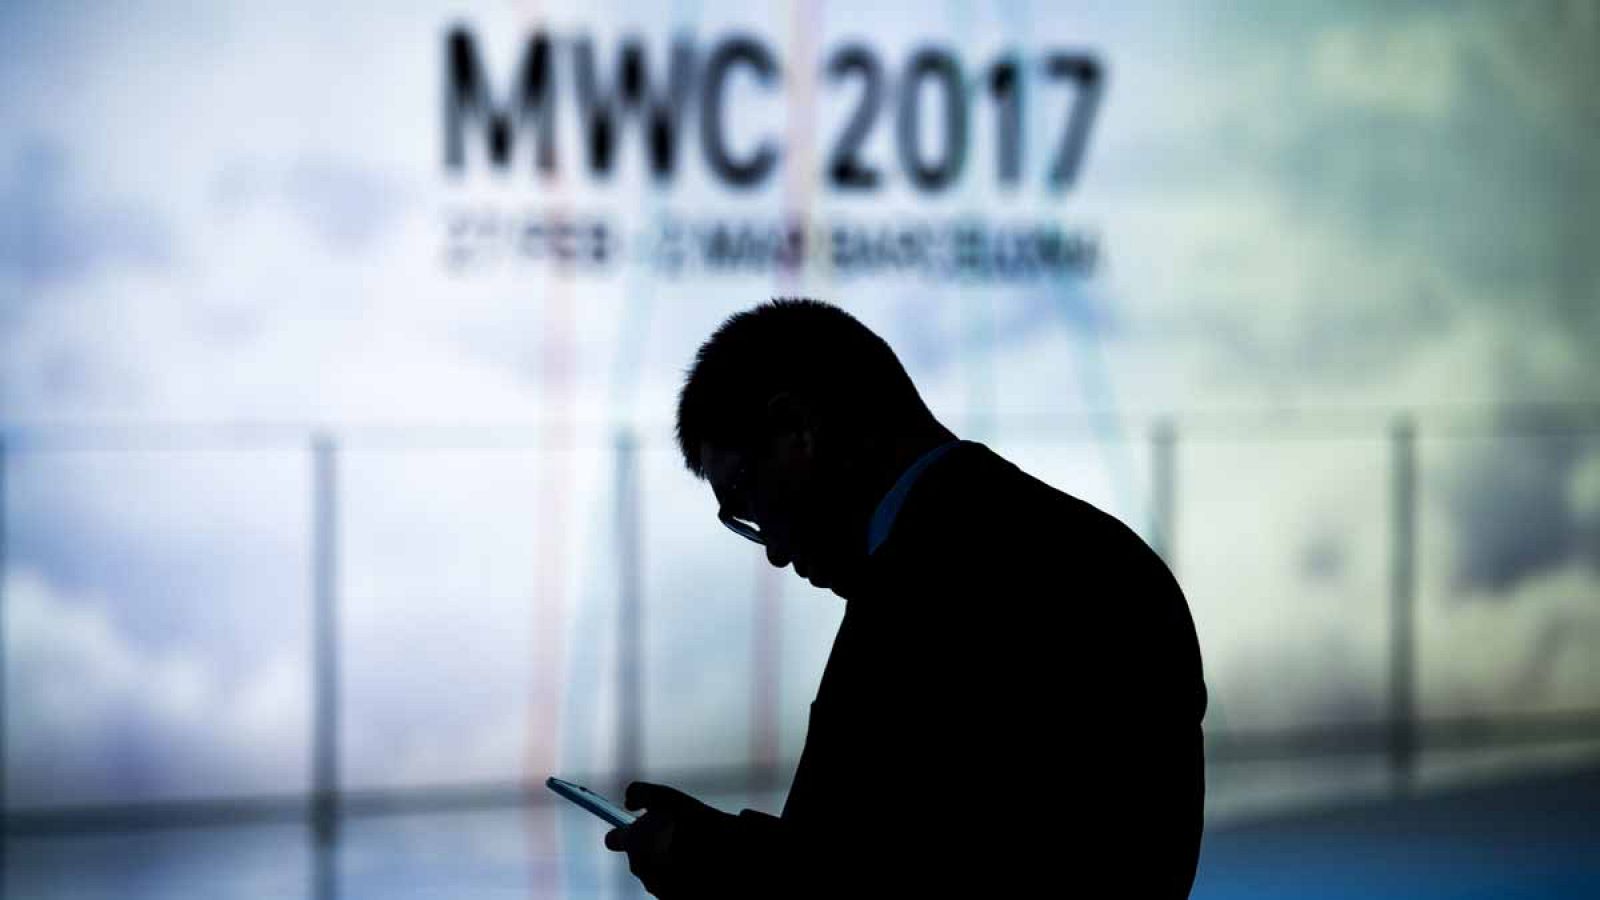 El MWC 2017 ha concluido con 108.000 participantes, un 7% más que en 2016.